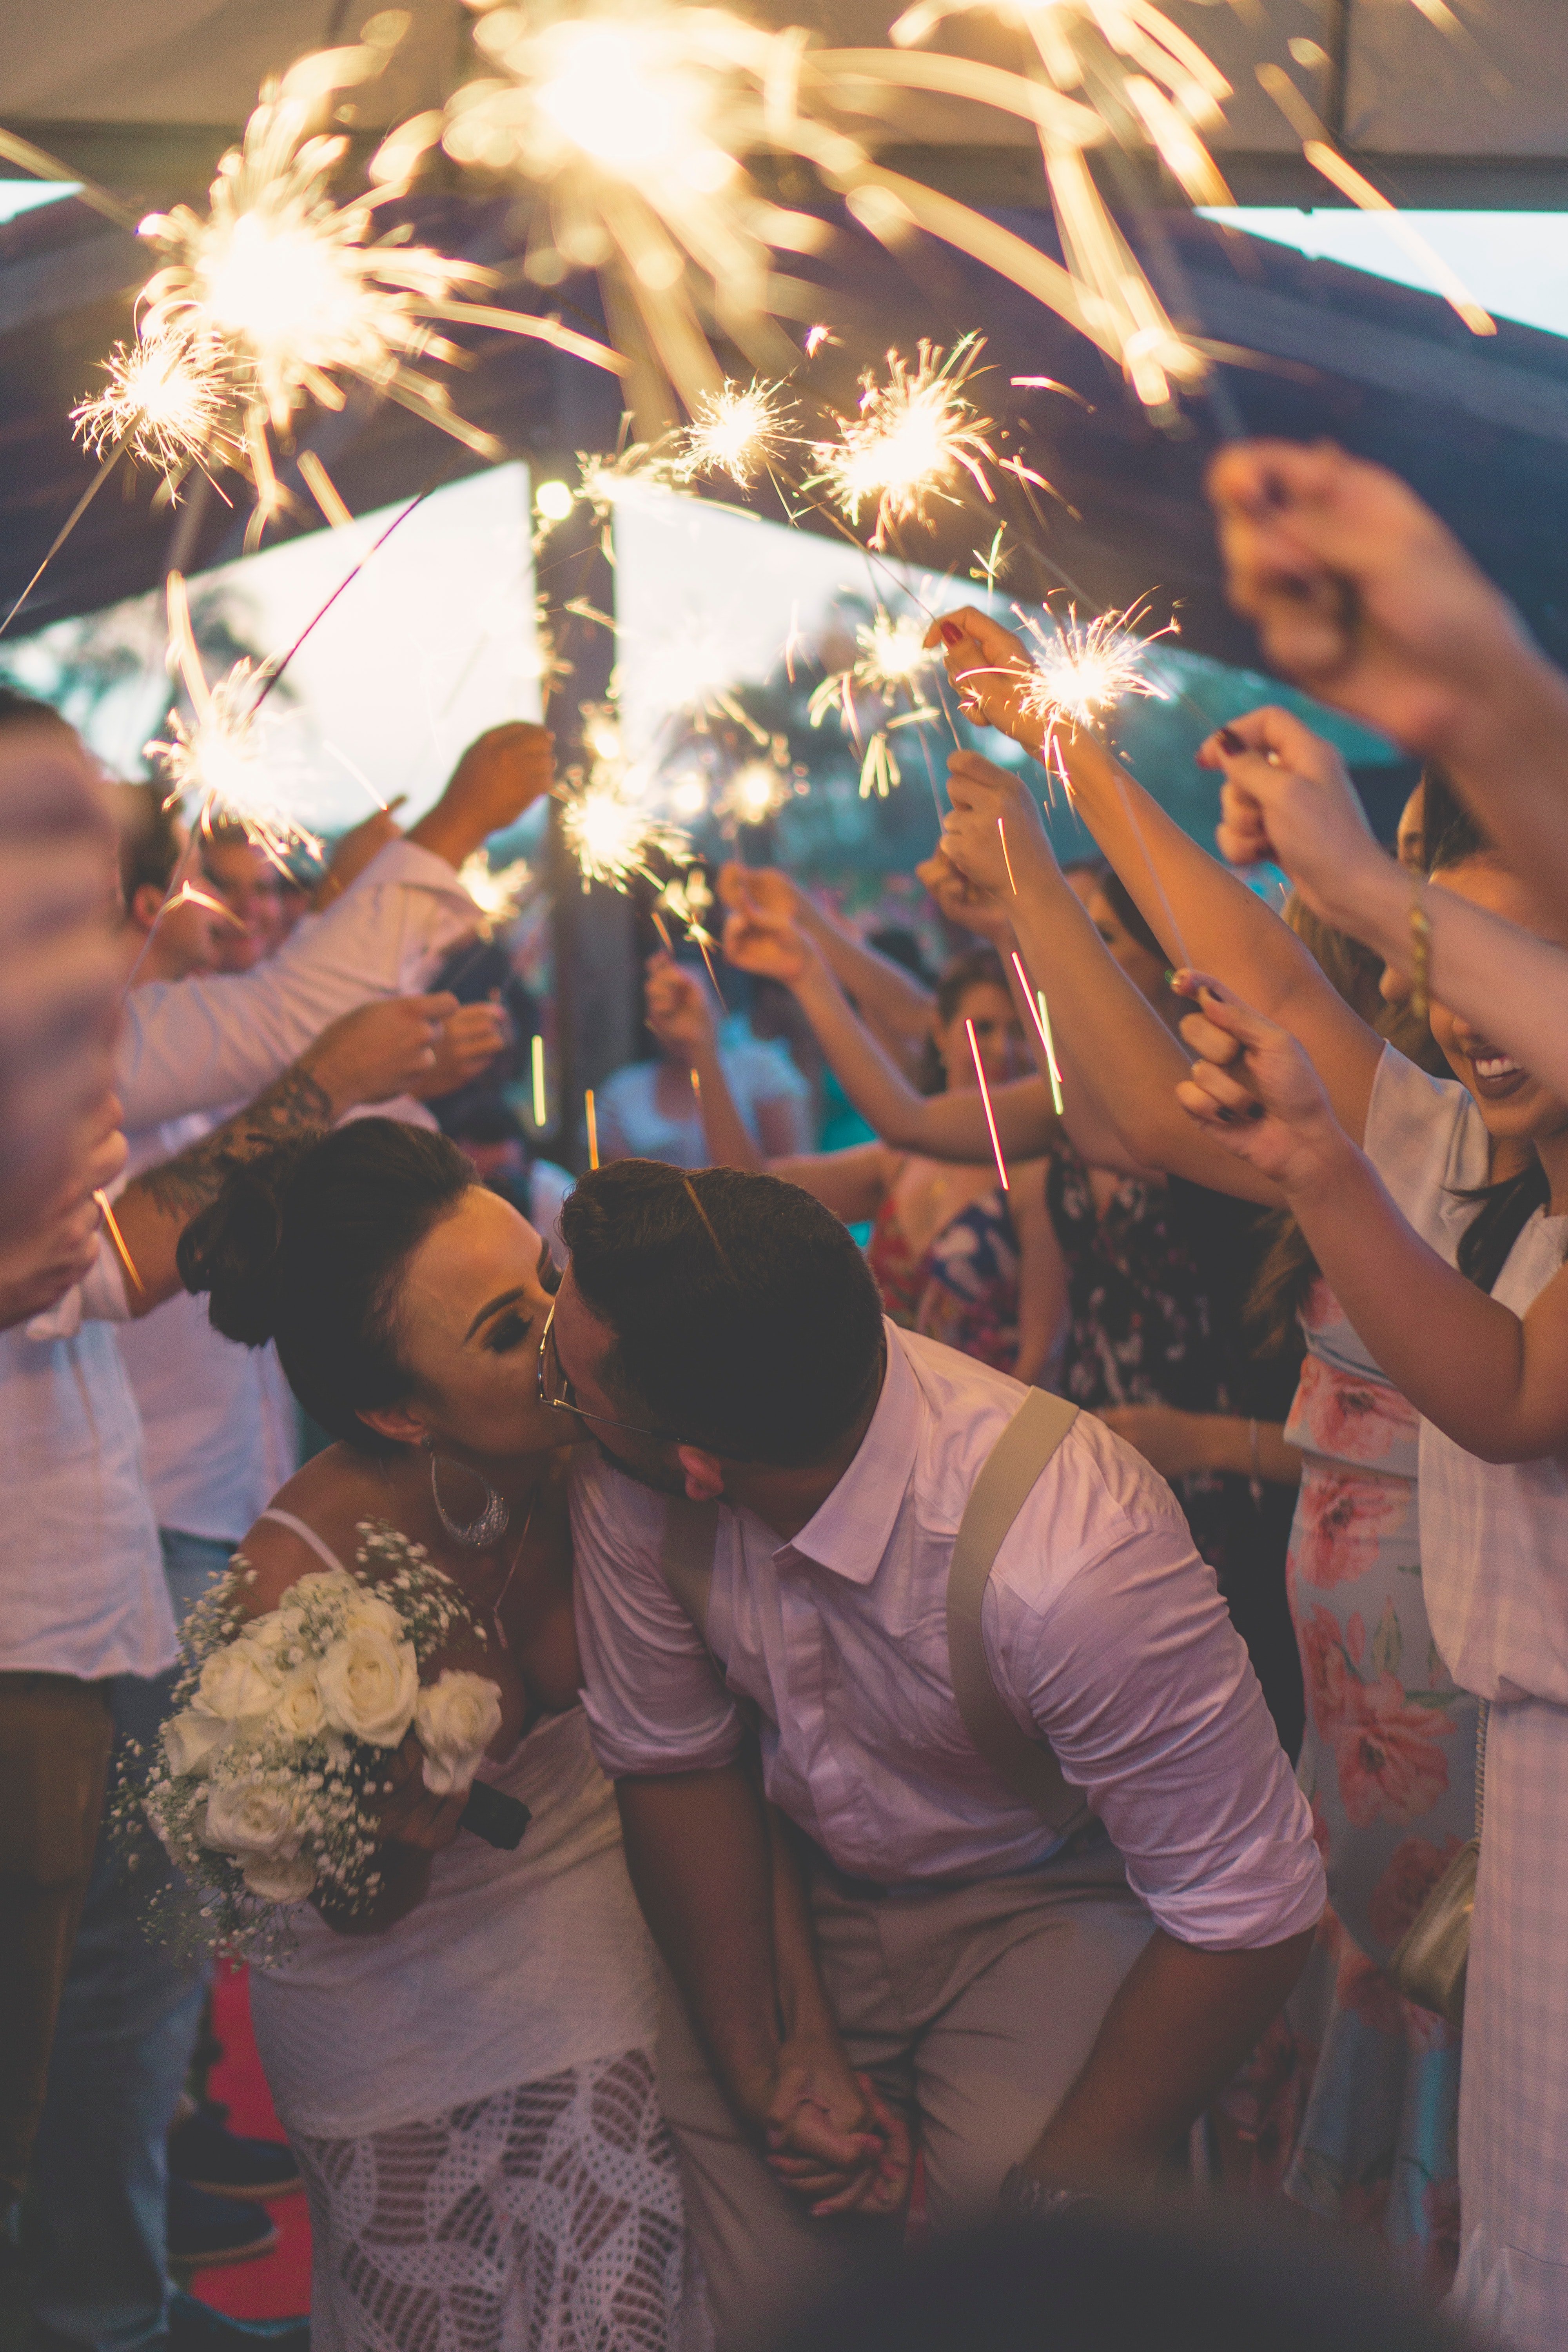 Una boda con fuegos artificiales. | Foto: Unsplash